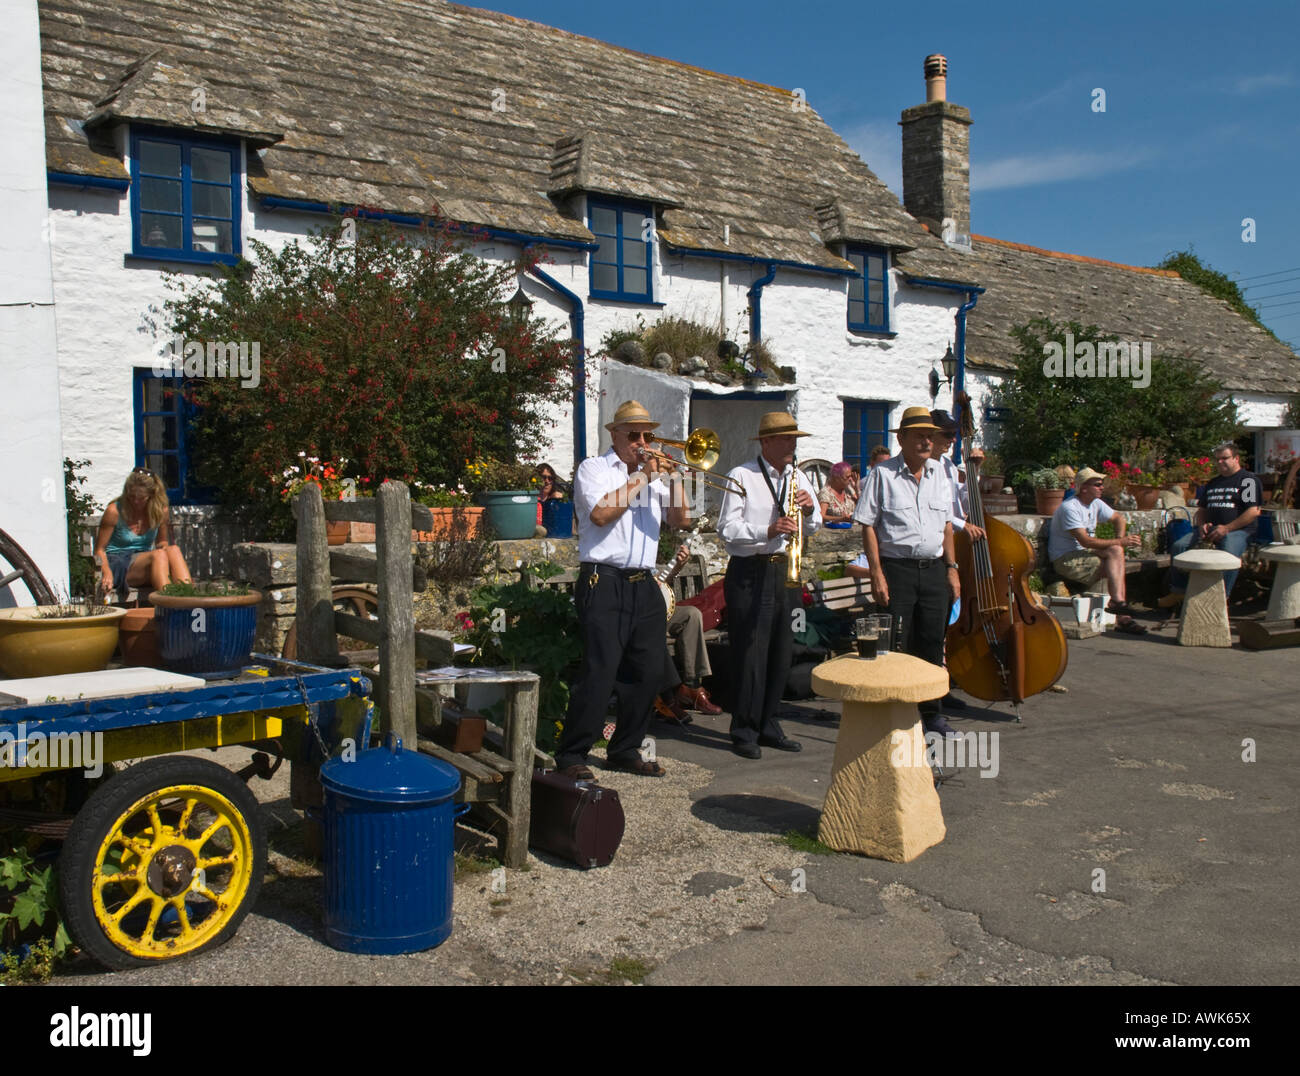 Traditionelle ländliche Szene der Jazzband spielt außerhalb des Square und Compass Pub in Worth Matravers Dorset, Großbritannien September Stockfoto